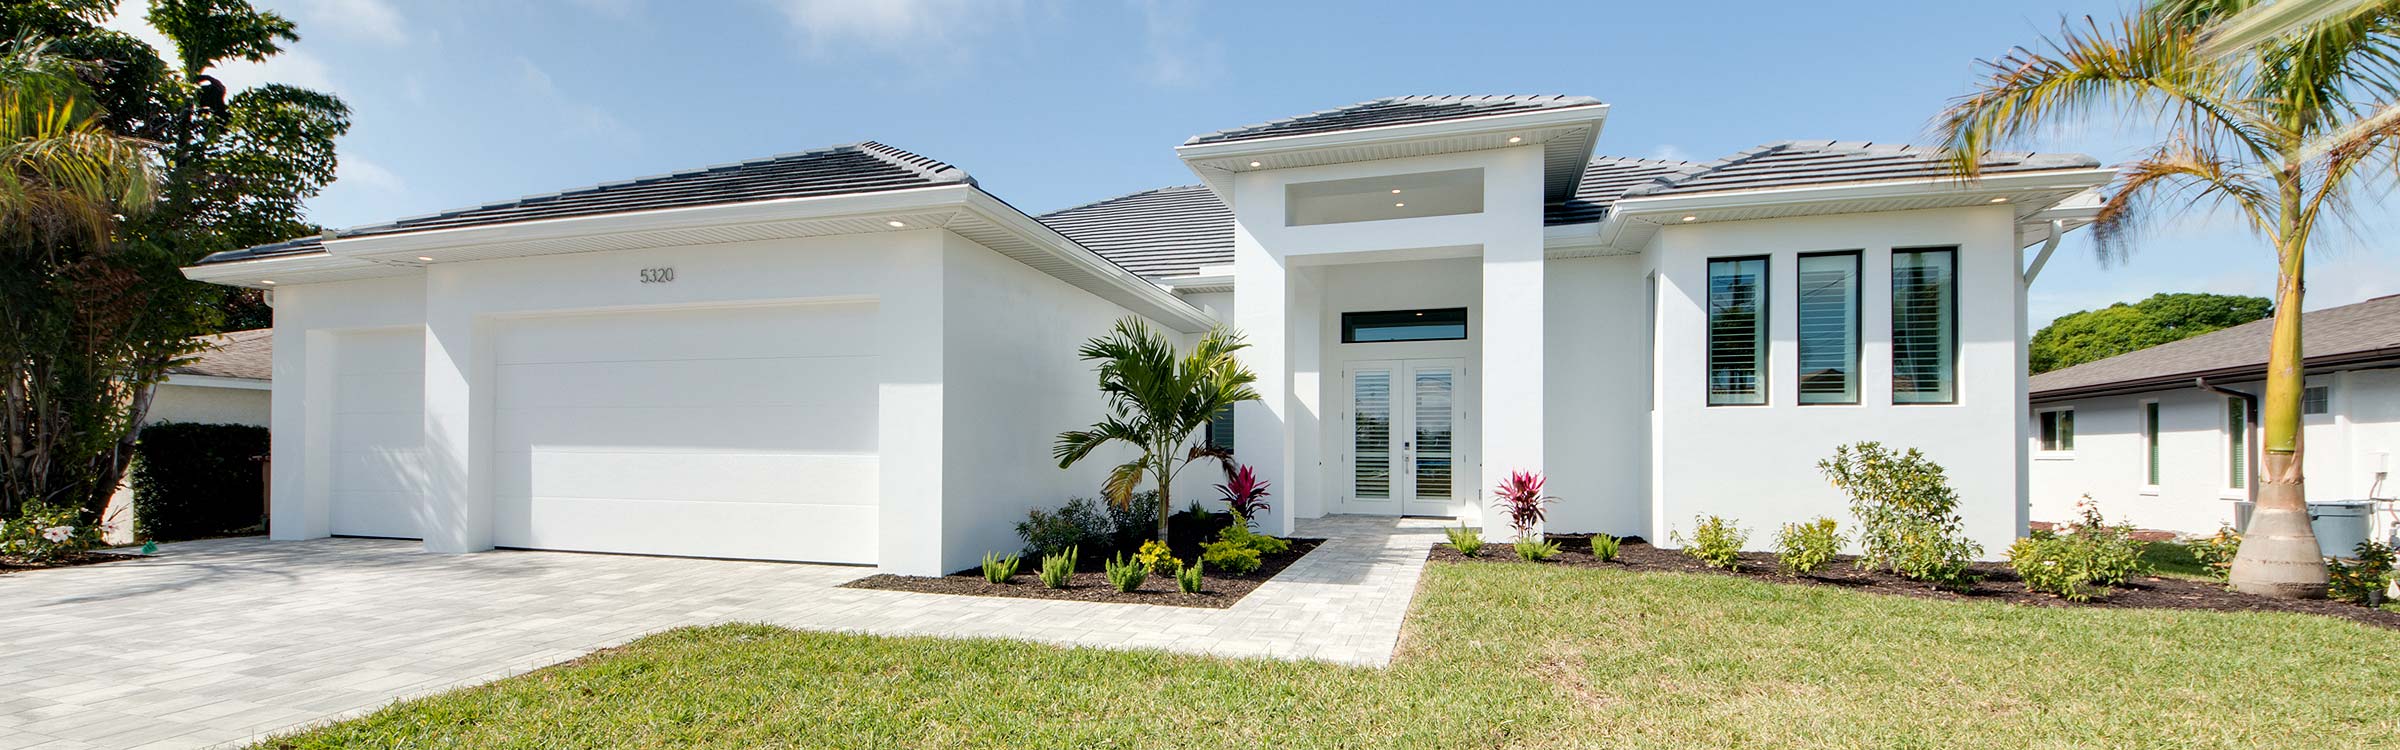 Immobilien in Florida kaufen